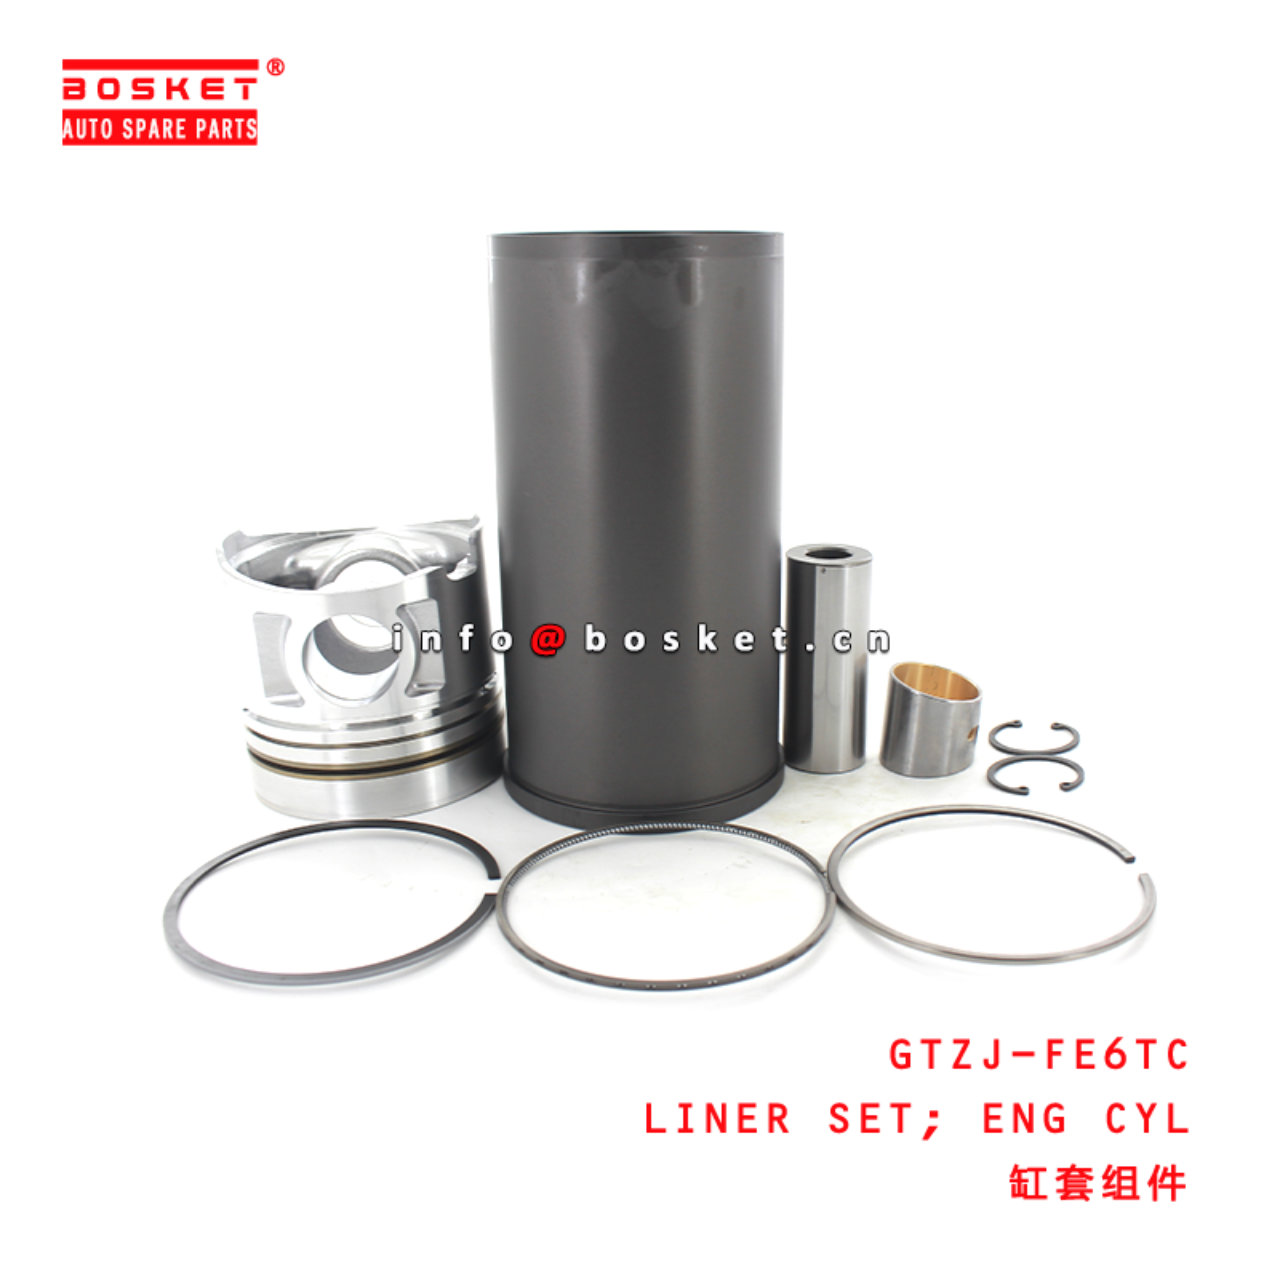 GTZJ-FE6TC Engine Cylinder Liner Set Suitable for ISUZU UD-NISSAN FE6TC -24V